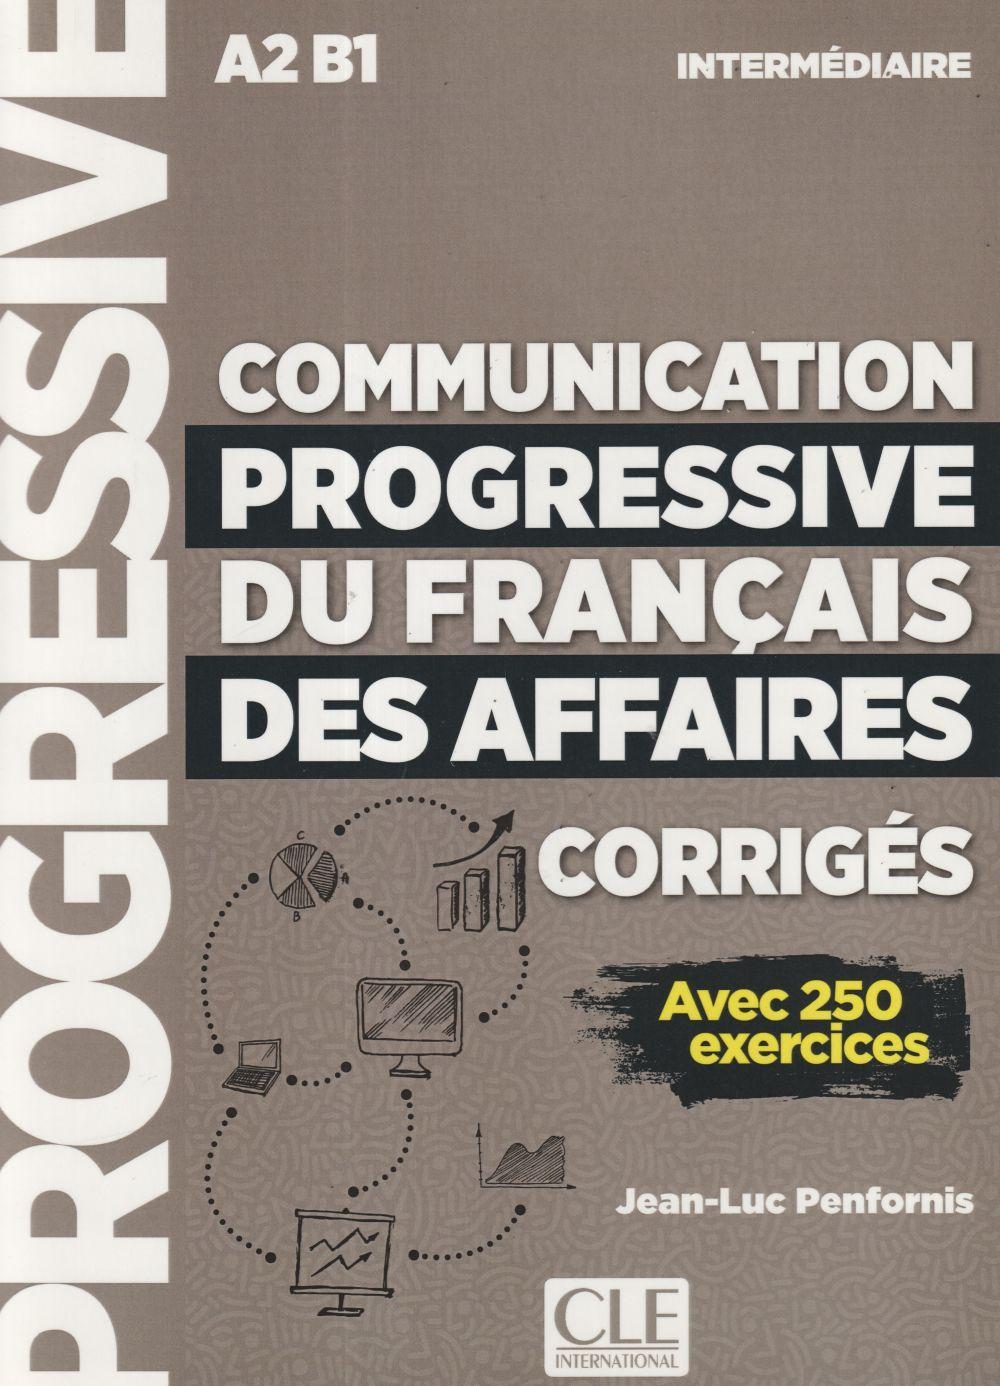 Communication progressive du francais des affaires / Corriges / Taschenbuch / Kartoniert / Broschiert / Französisch / 2018 / EAN 9782090382068